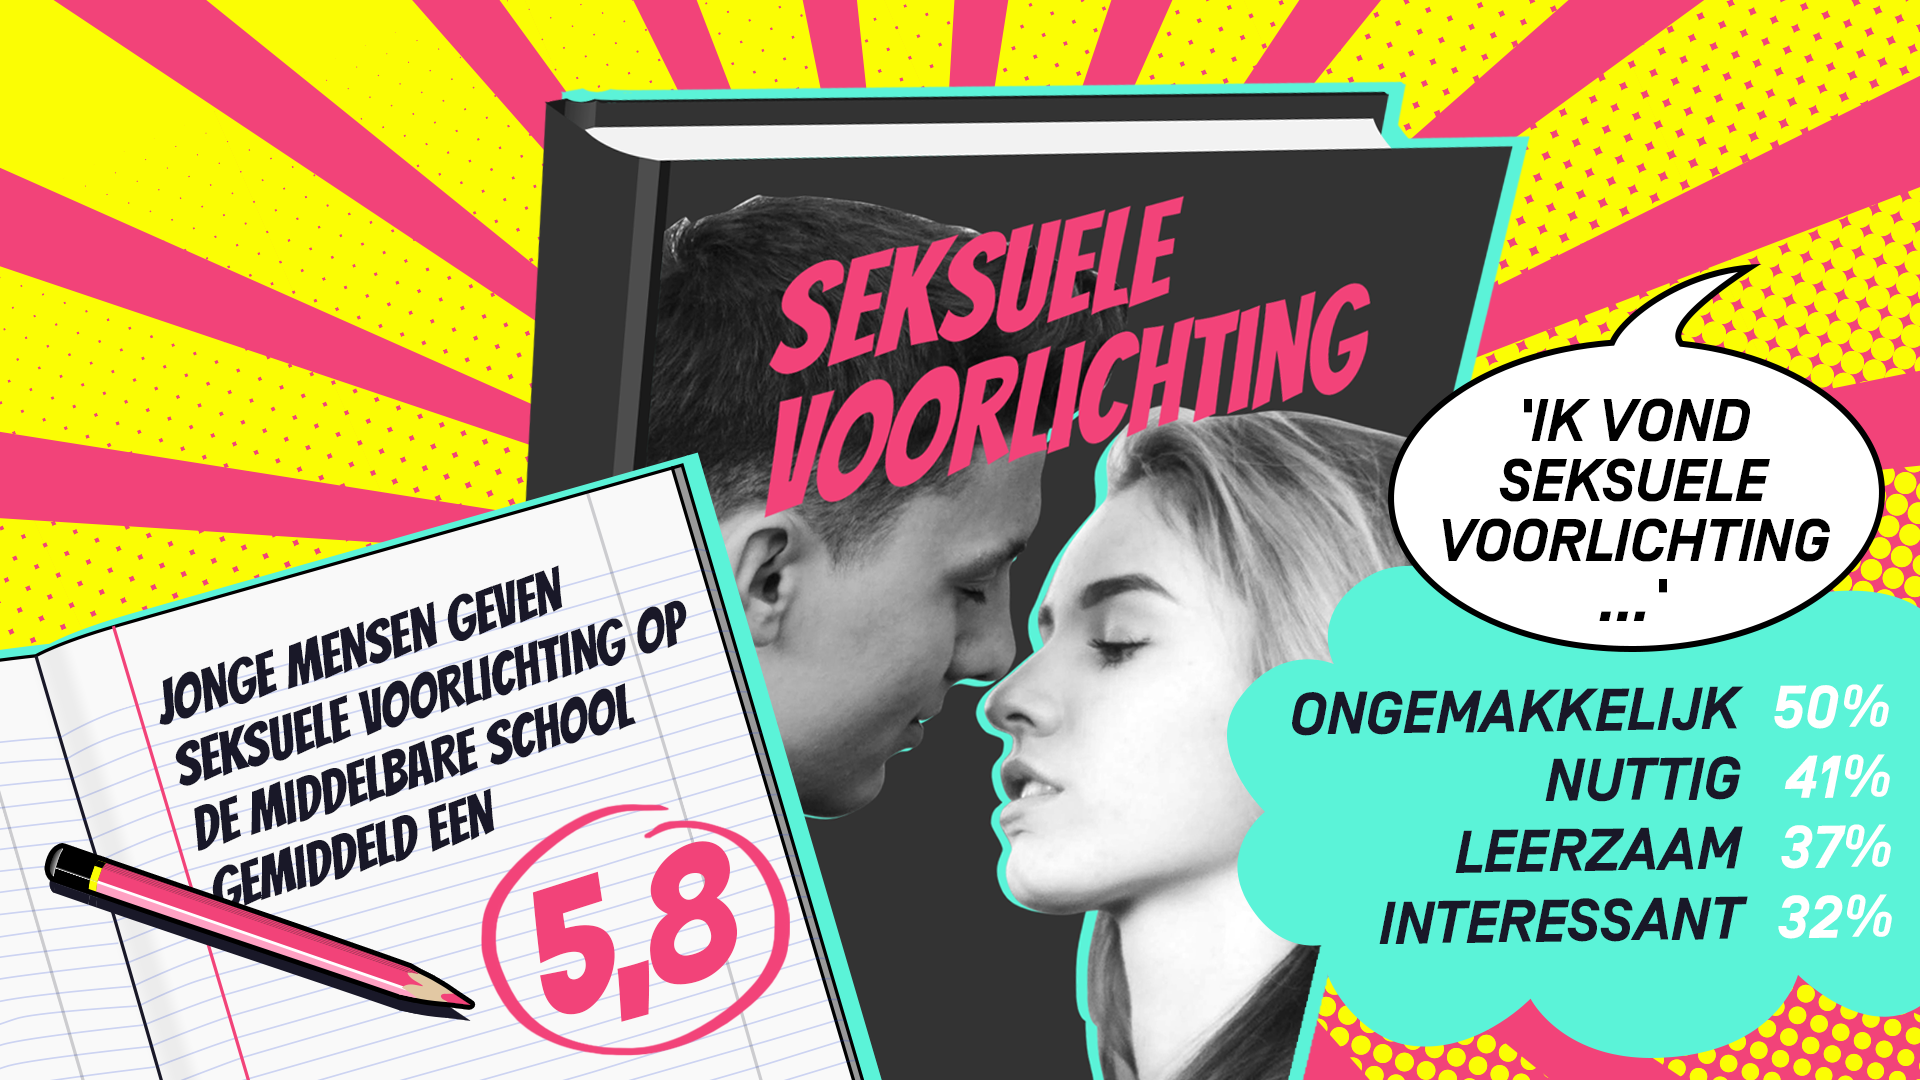 Sexuele voorlichting 1991 бельгия